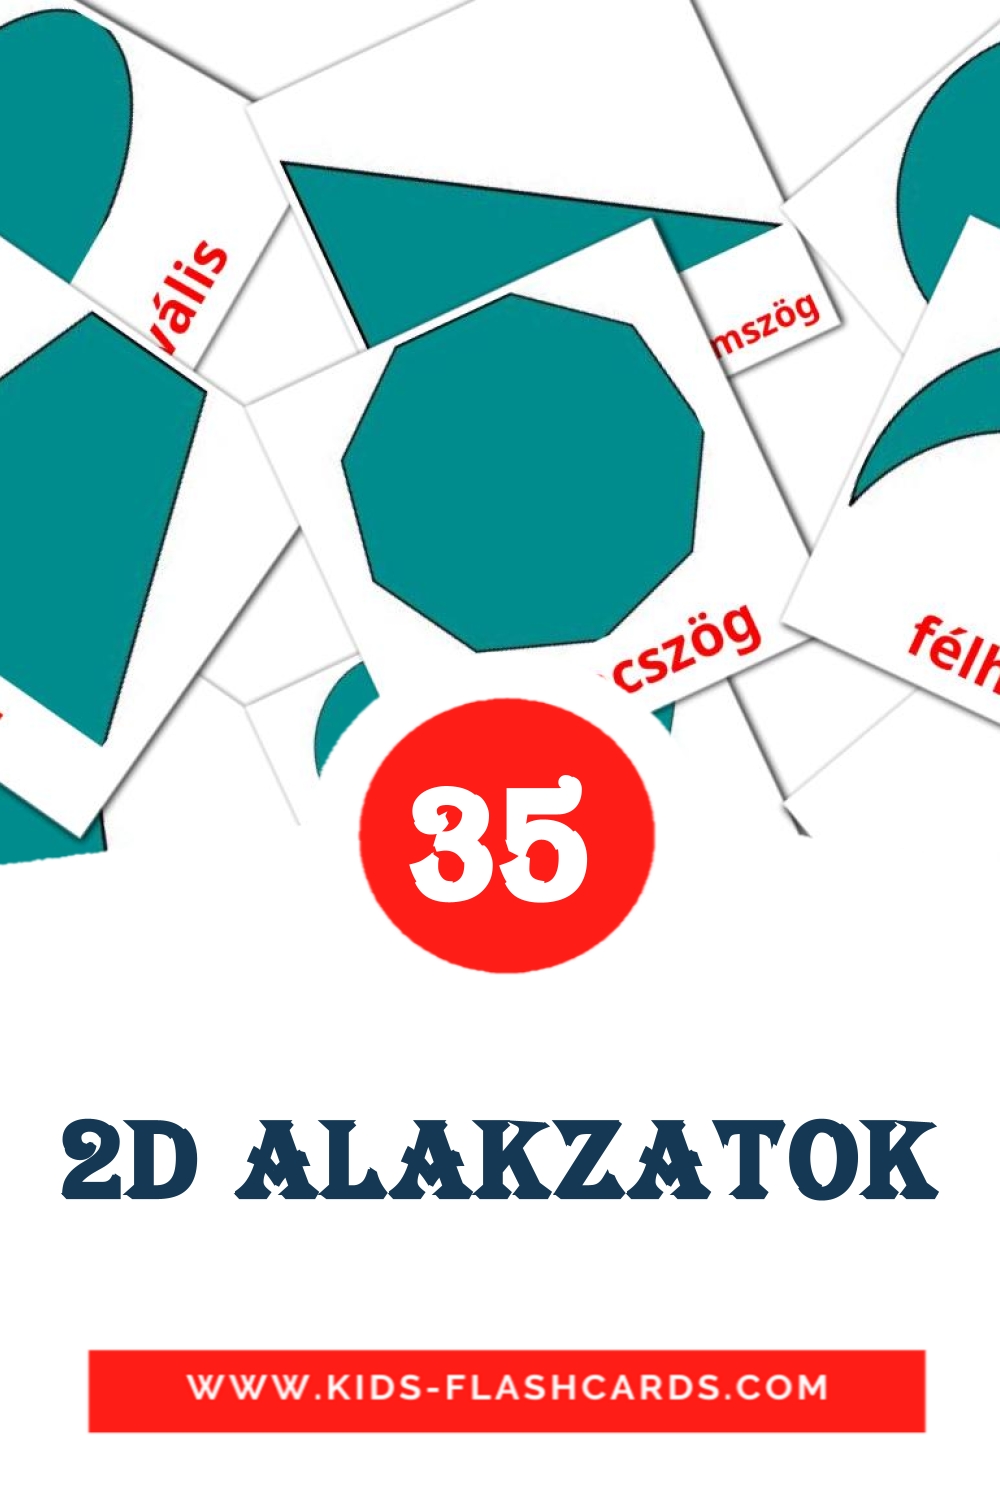 35 cartes illustrées de 2D alakzatok pour la maternelle en hongrois